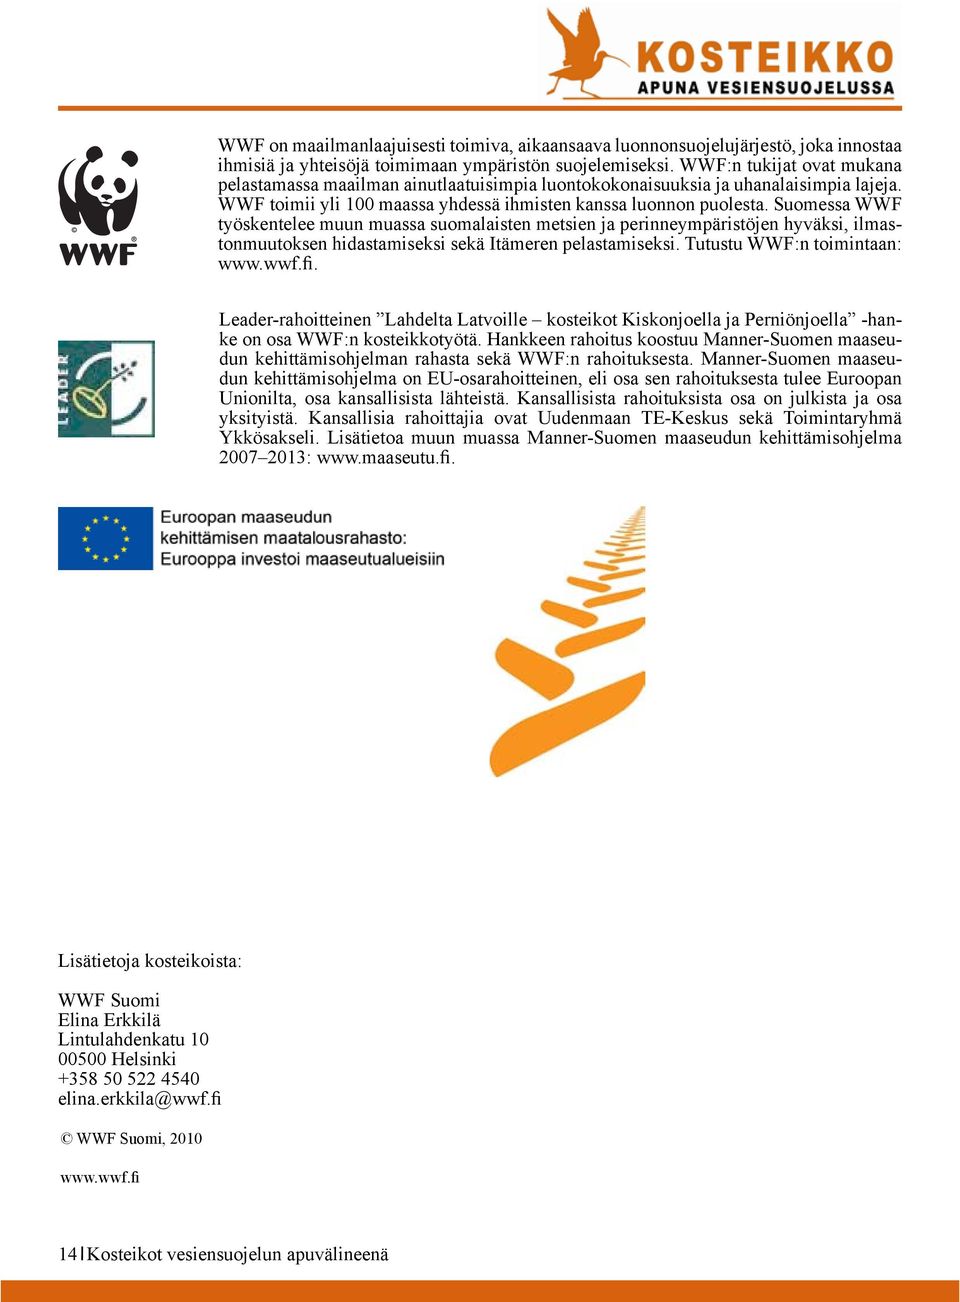 Suomessa WWF työskentelee muun muassa suomalaisten metsien ja perinneympäristöjen hyväksi, ilmastonmuutoksen hidastamiseksi sekä Itämeren pelastamiseksi. Tutustu WWF:n toimintaan: www.wwf.fi.